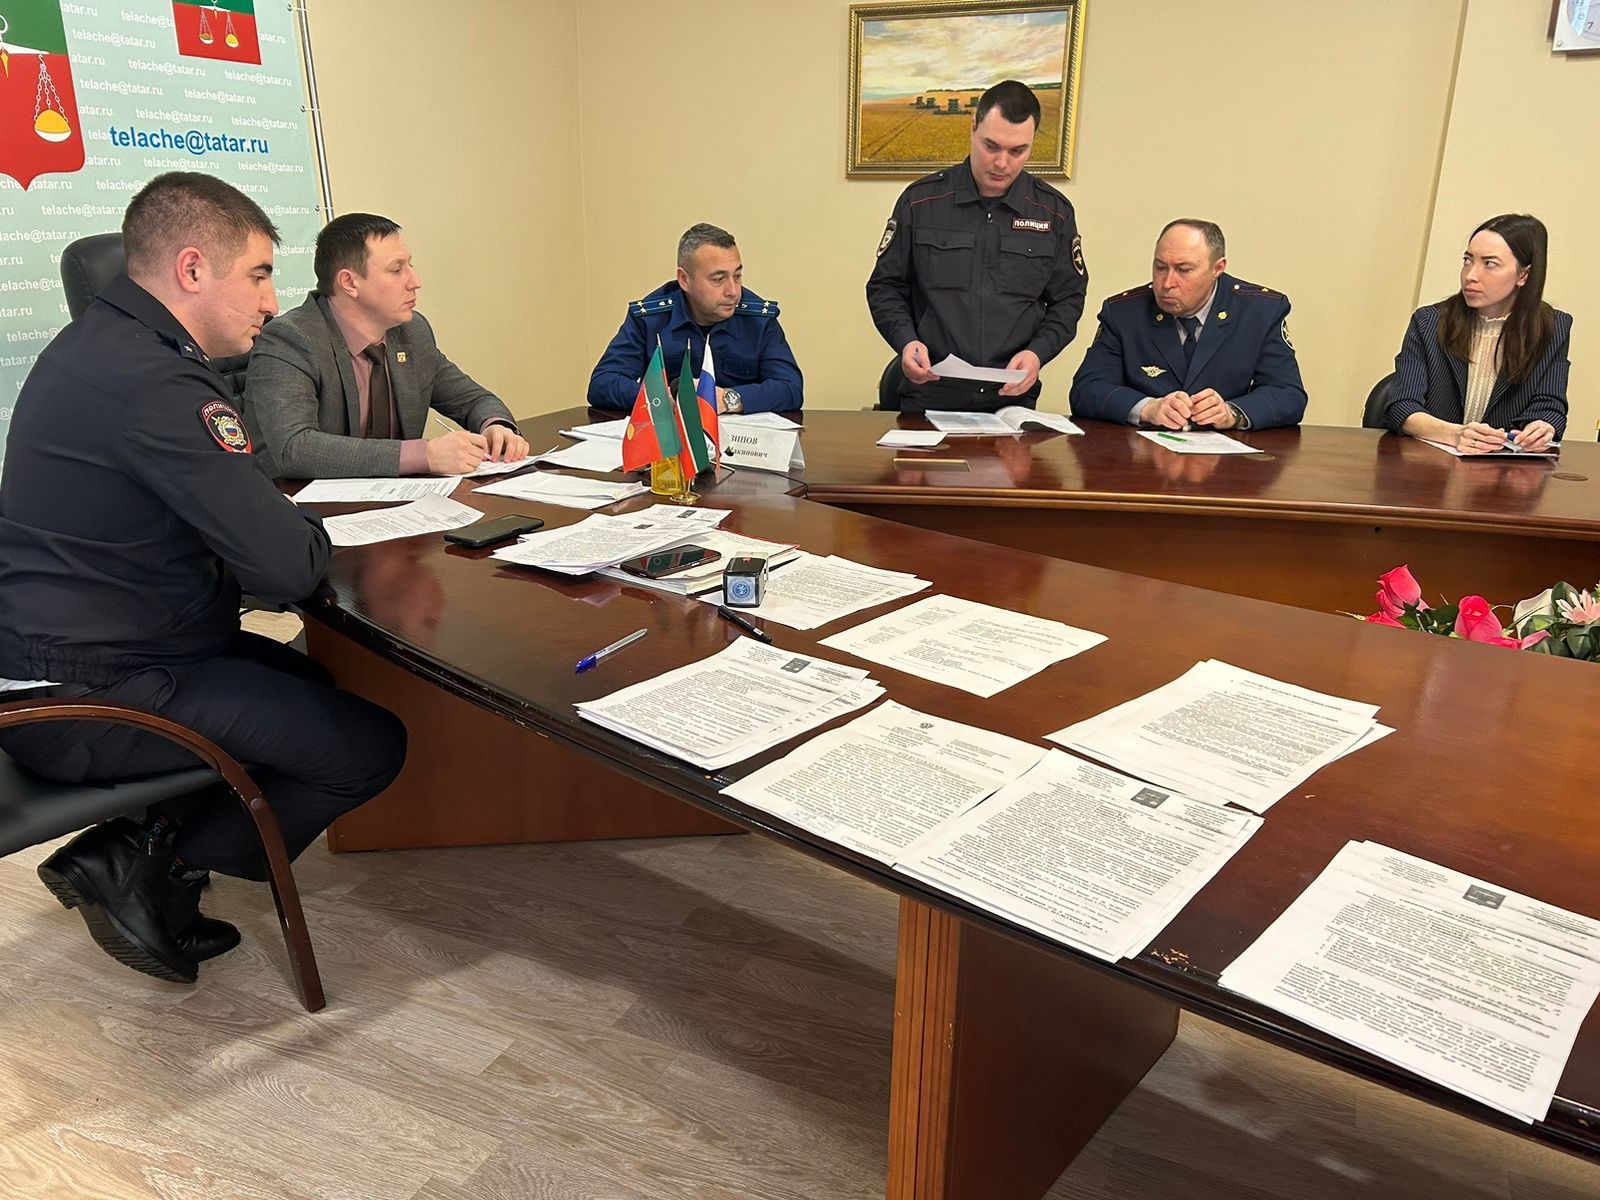 Состоялось заседание комиссии по делам несовершеннолетних и защите их прав Тюлячинского муниципального района